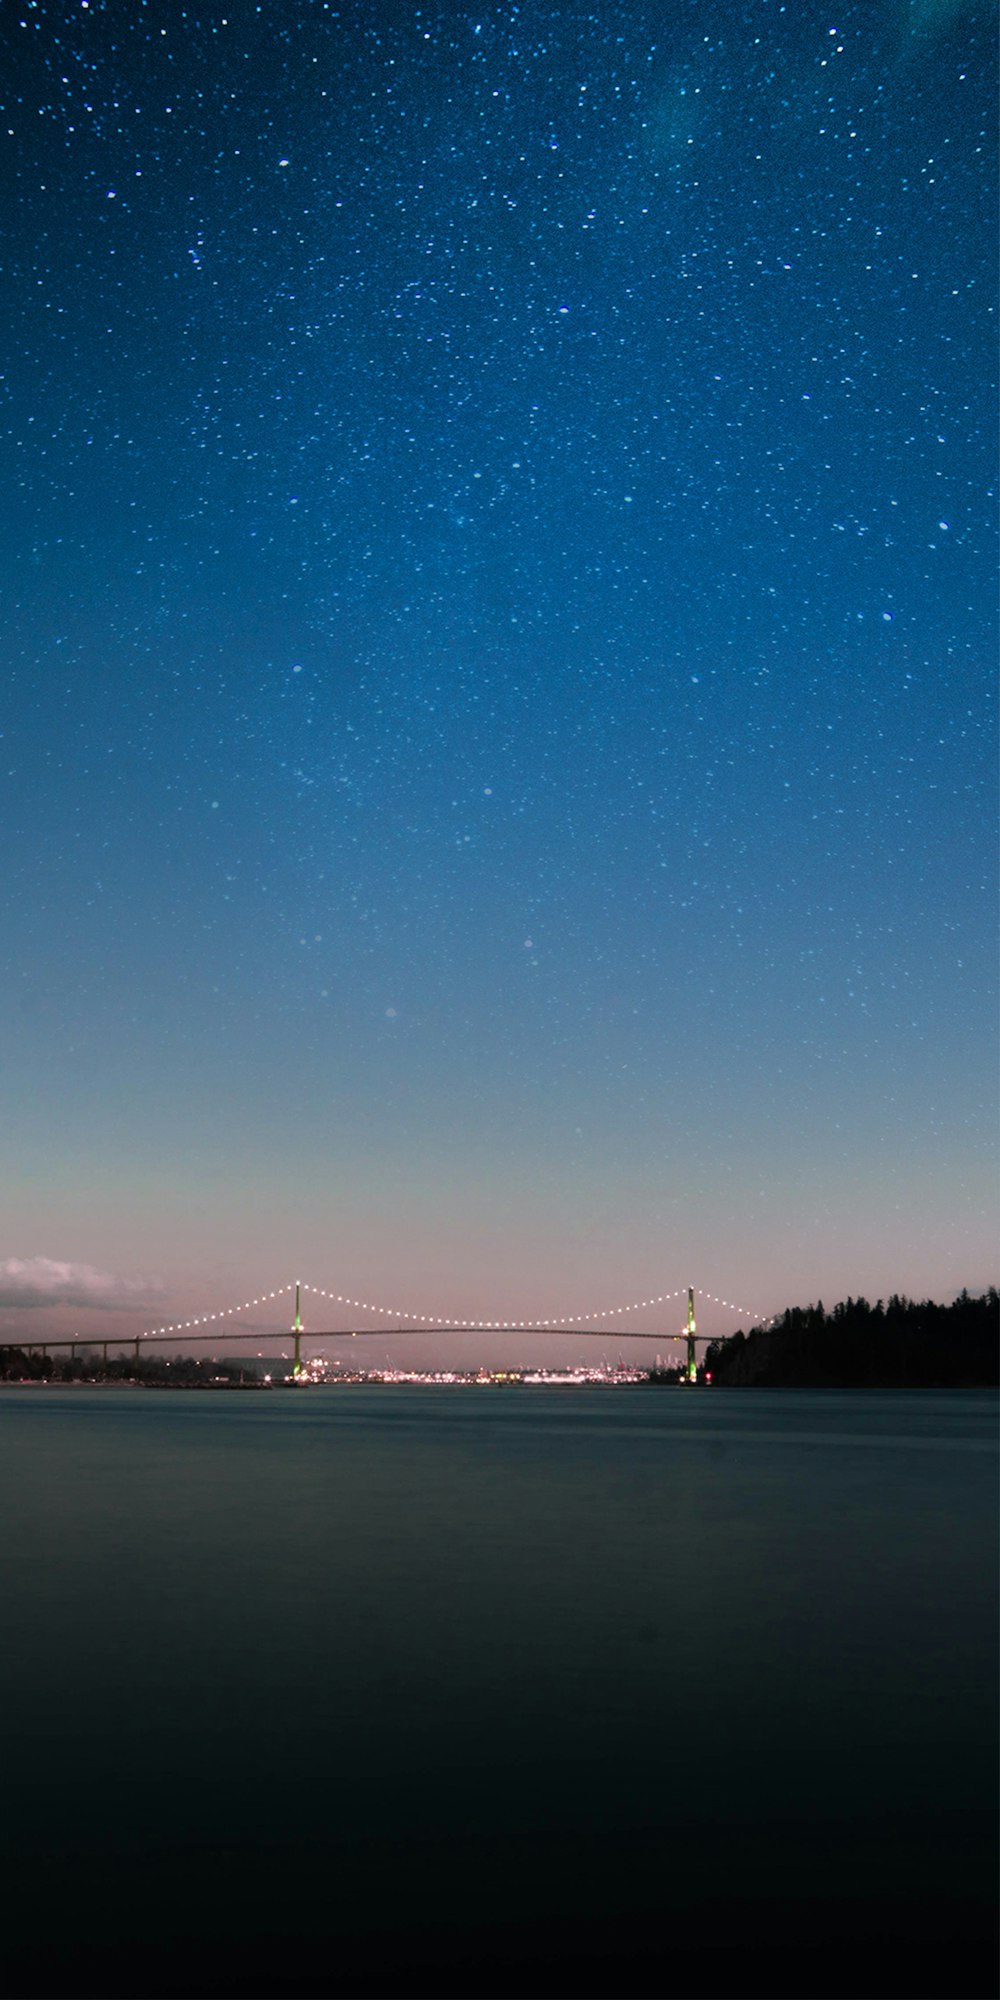 puente iluminado bajo el cielo azul y blanco por la noche